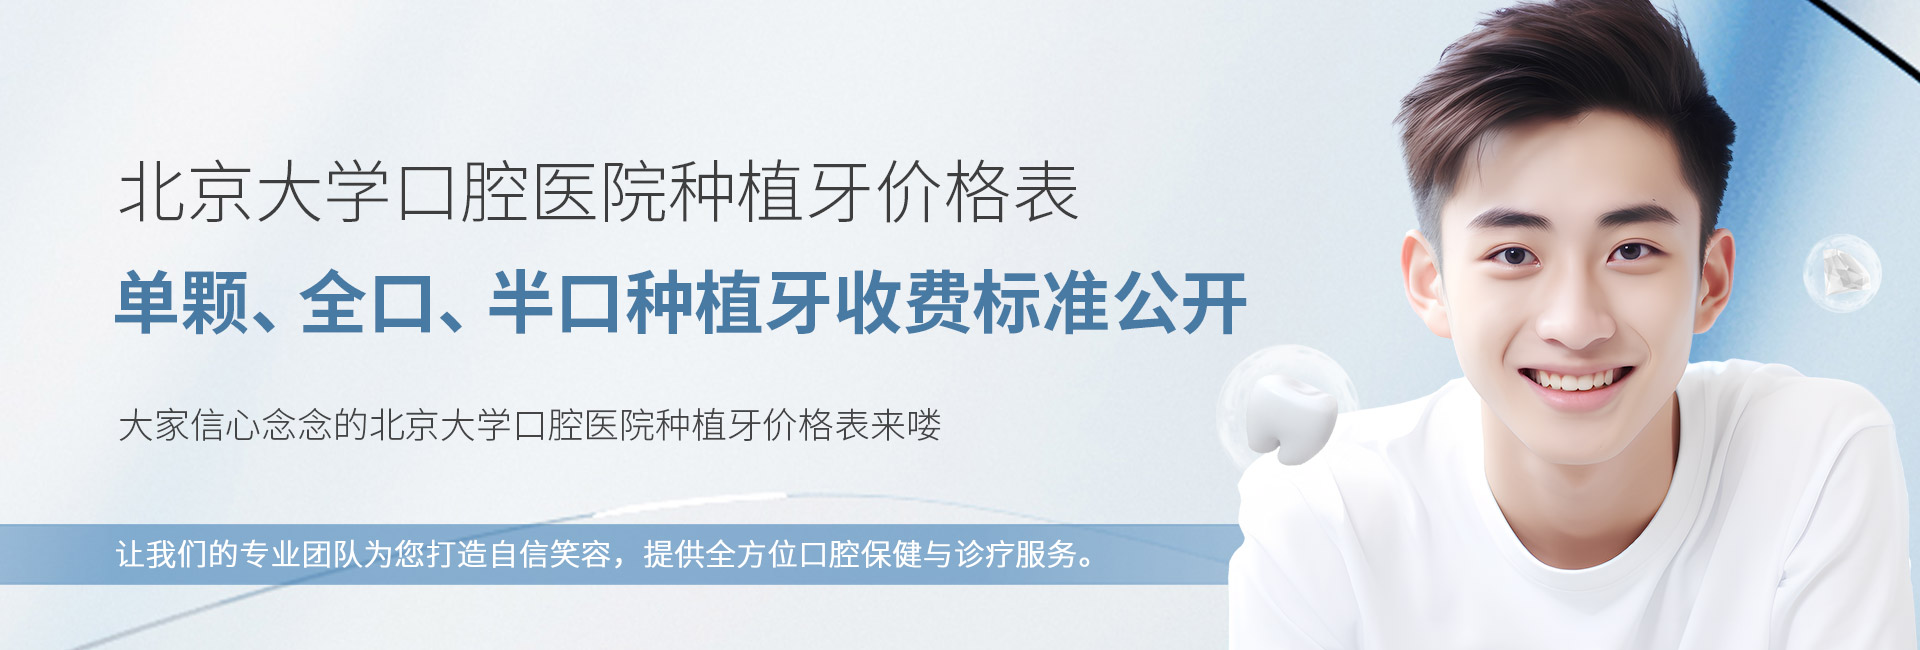 北京大学口腔医院种植牙价格表:单颗、全口、半口种植牙收费标准公开